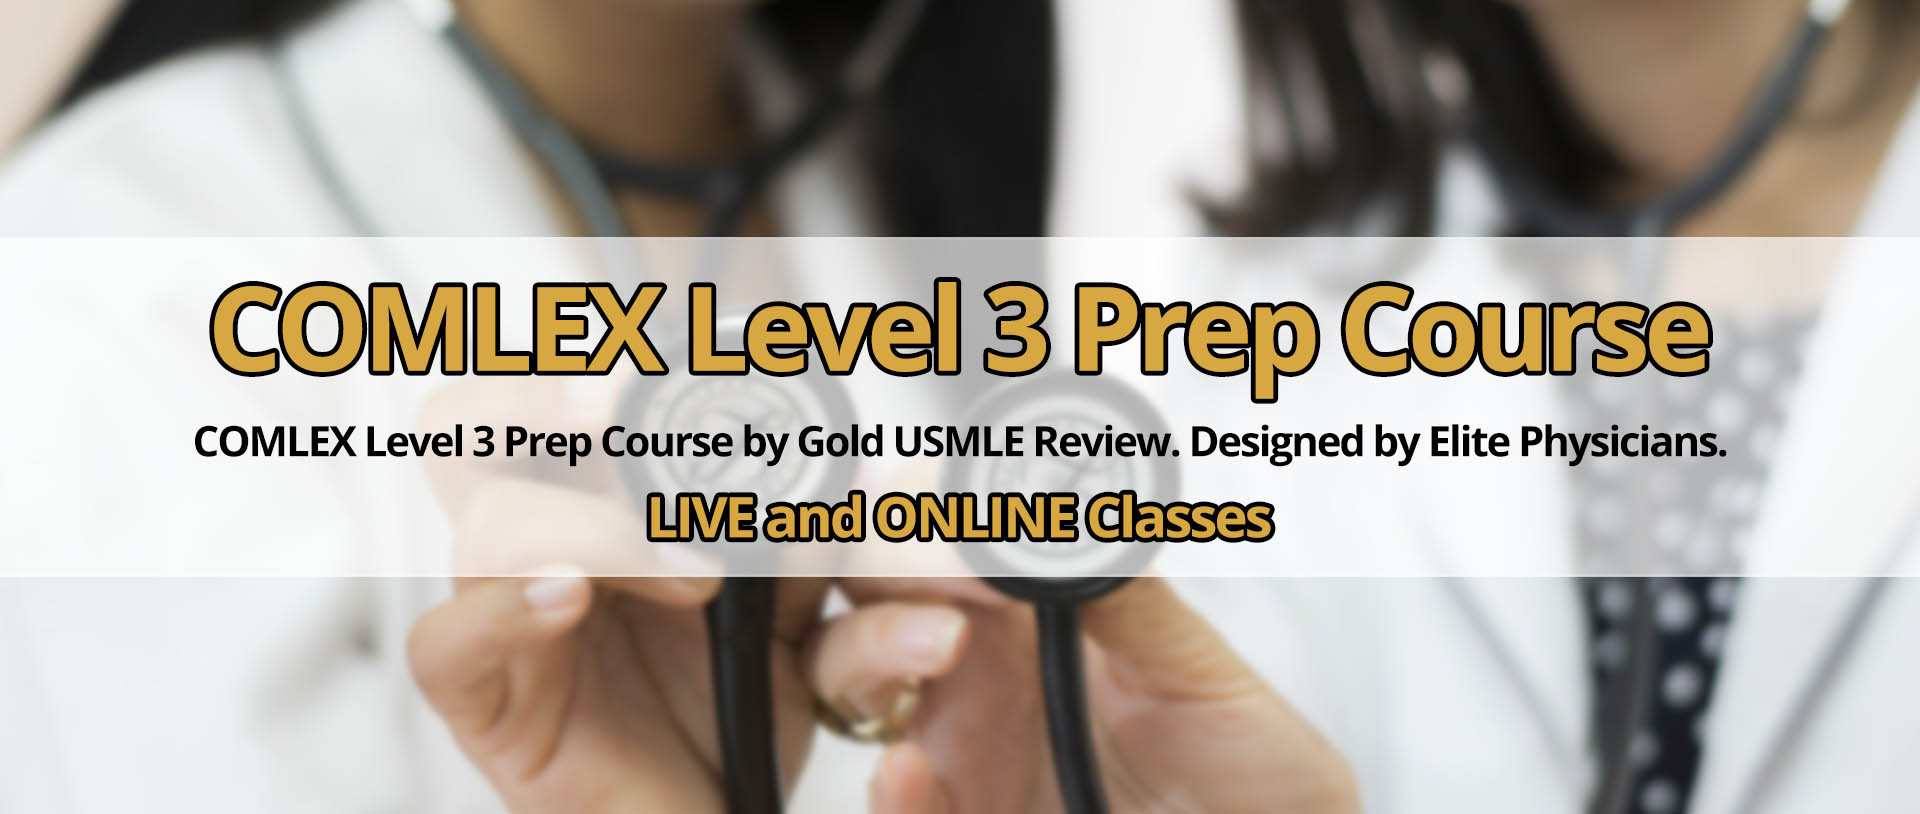 COMLEX Level 3 Prep Course